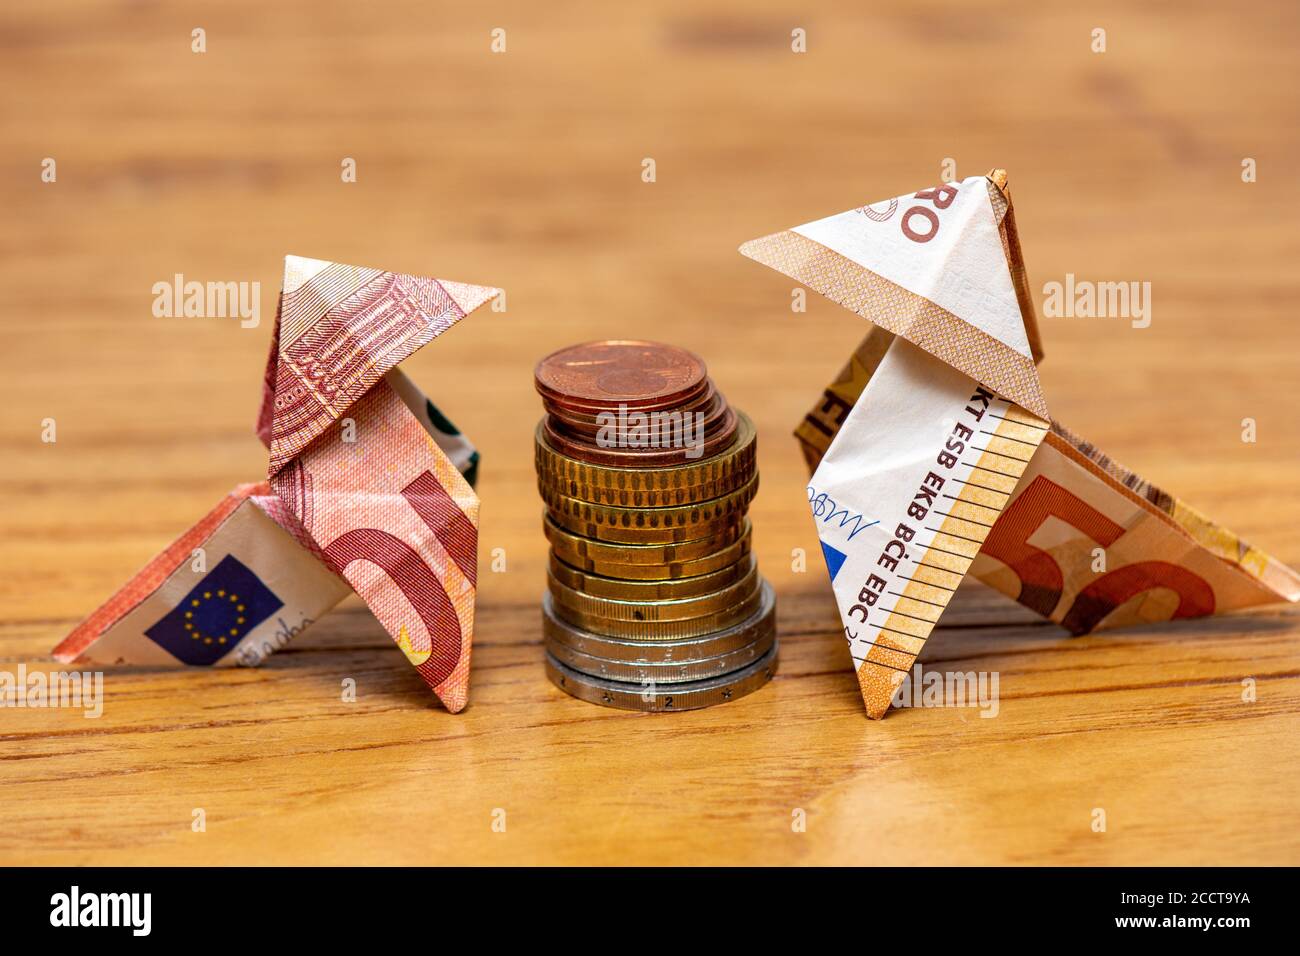 Oiseaux d'origami faits de billets de banque de 10 et 50 euros autour d'une  pile de pièces en euros Photo Stock - Alamy